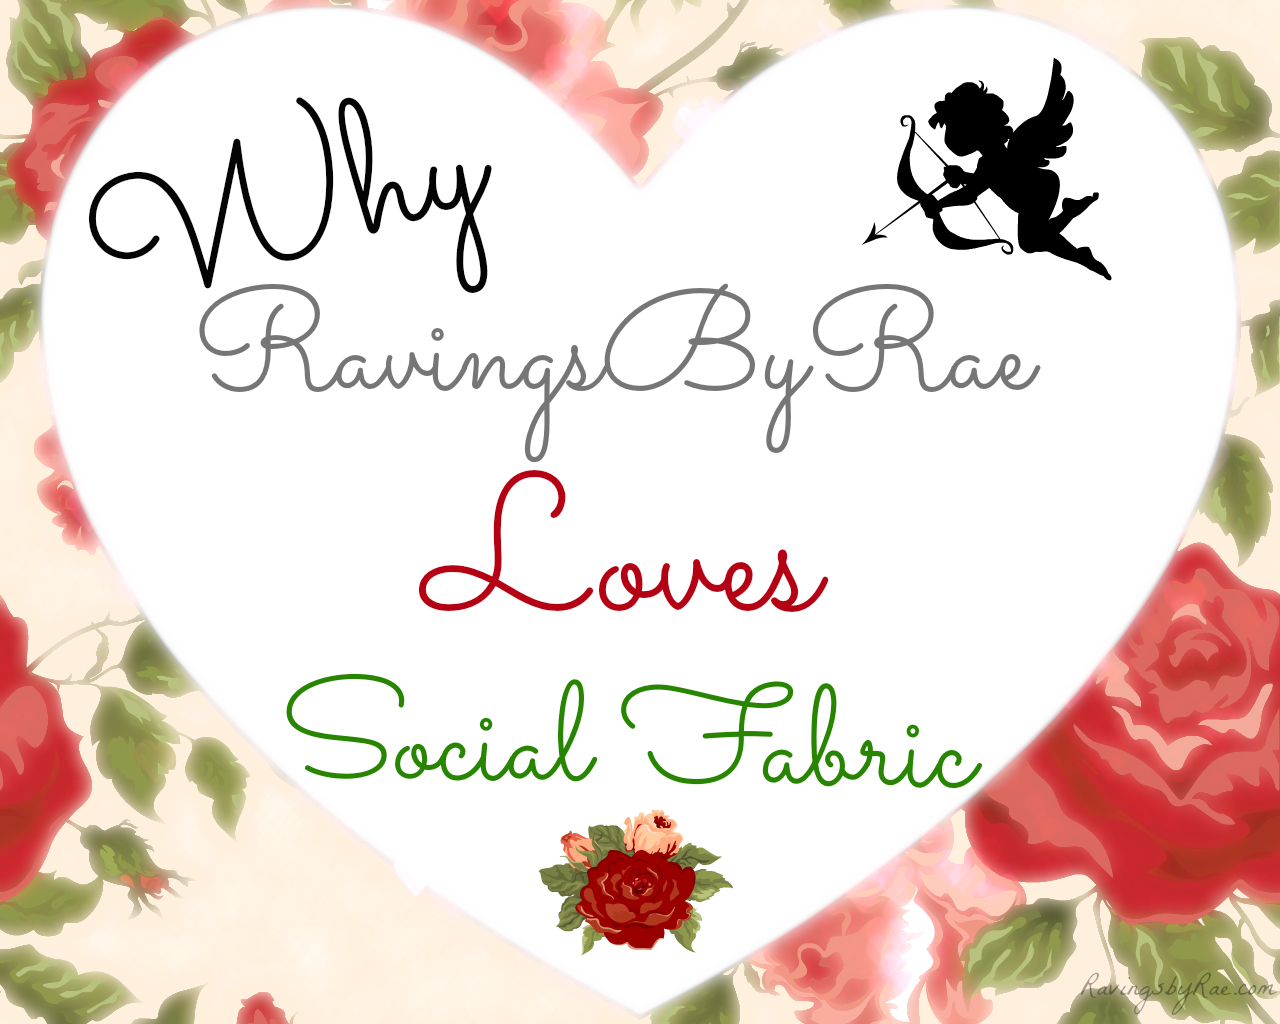 Why RavingsByRae Loves Social Fabric #LuvSoFab